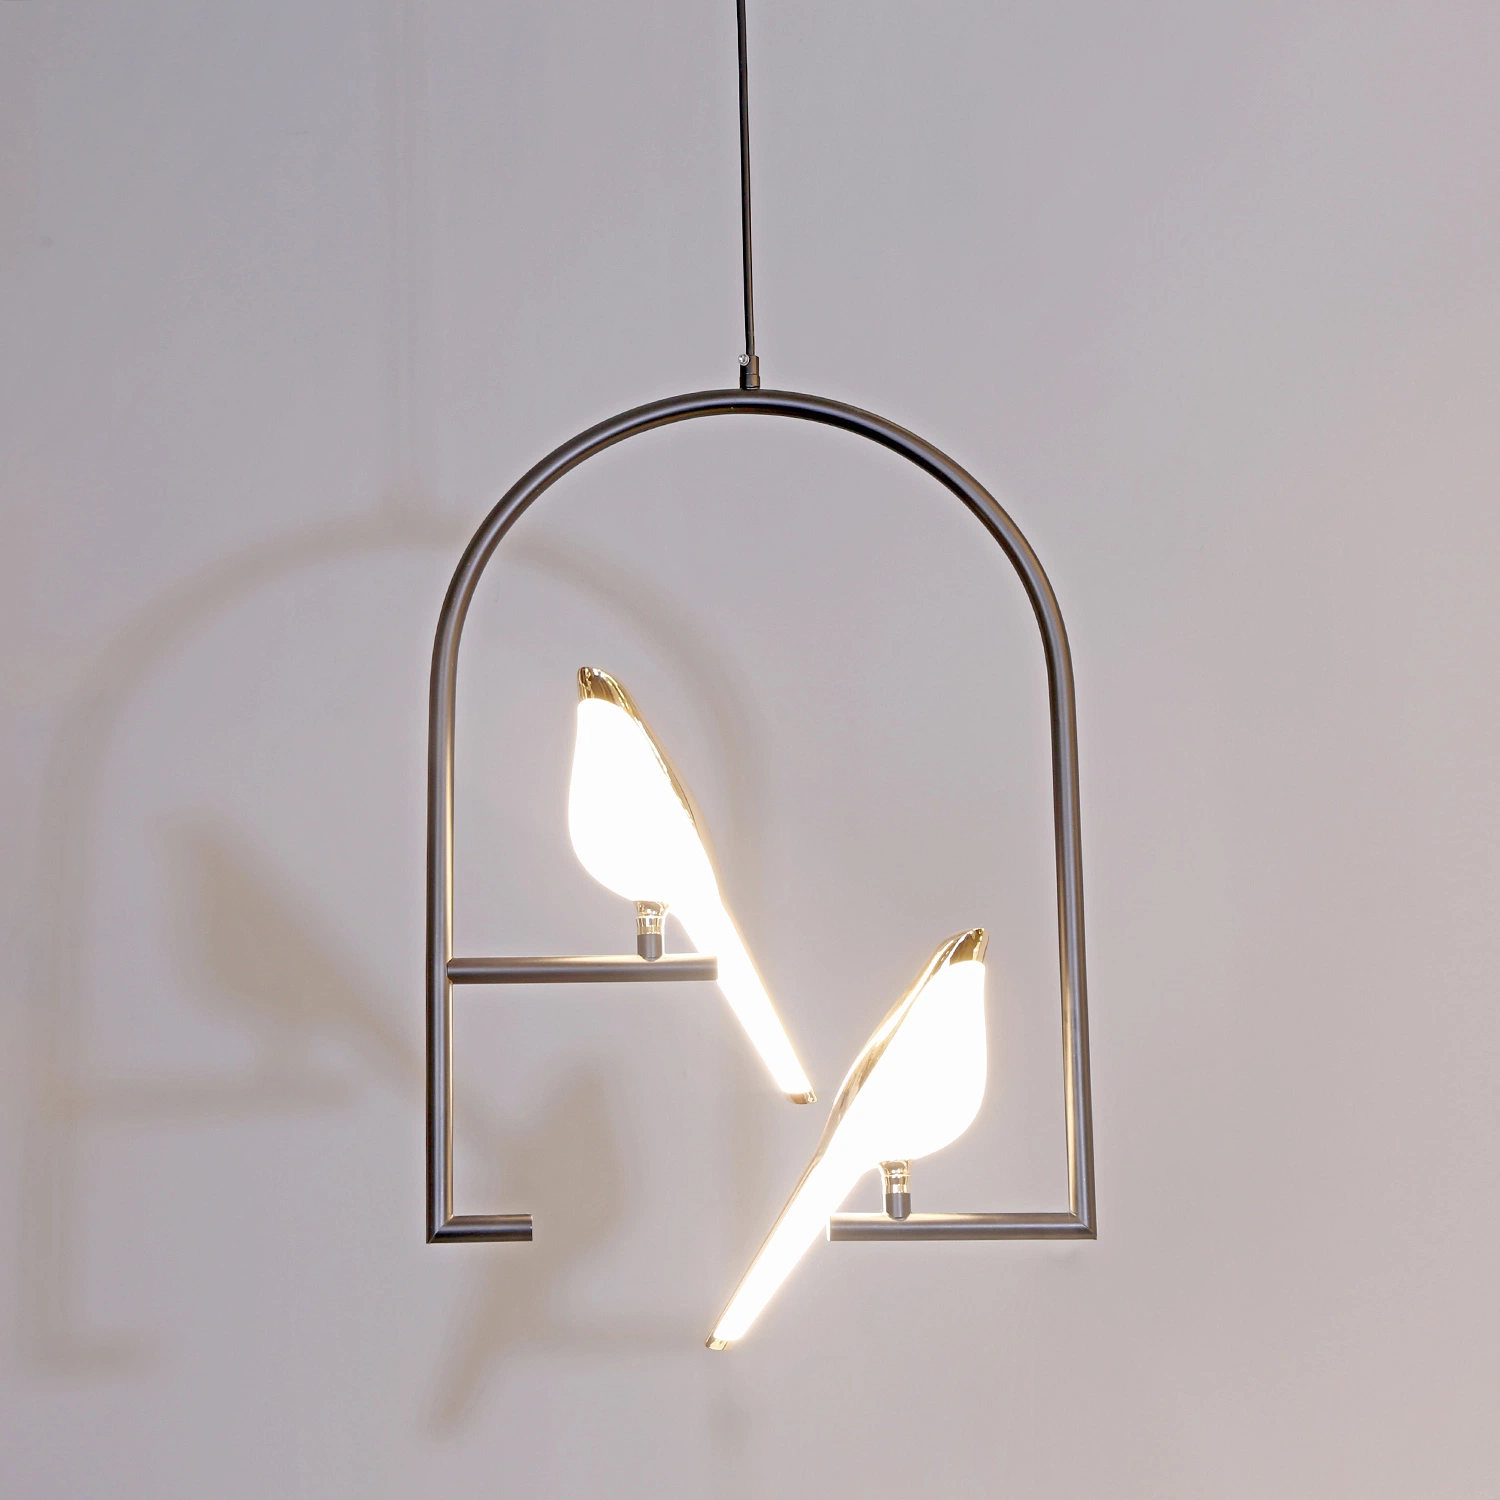 LED-Licht Home Dekoration Vogel Schatten Design Wohnen Moderne Beleuchtung Pendelleuchte